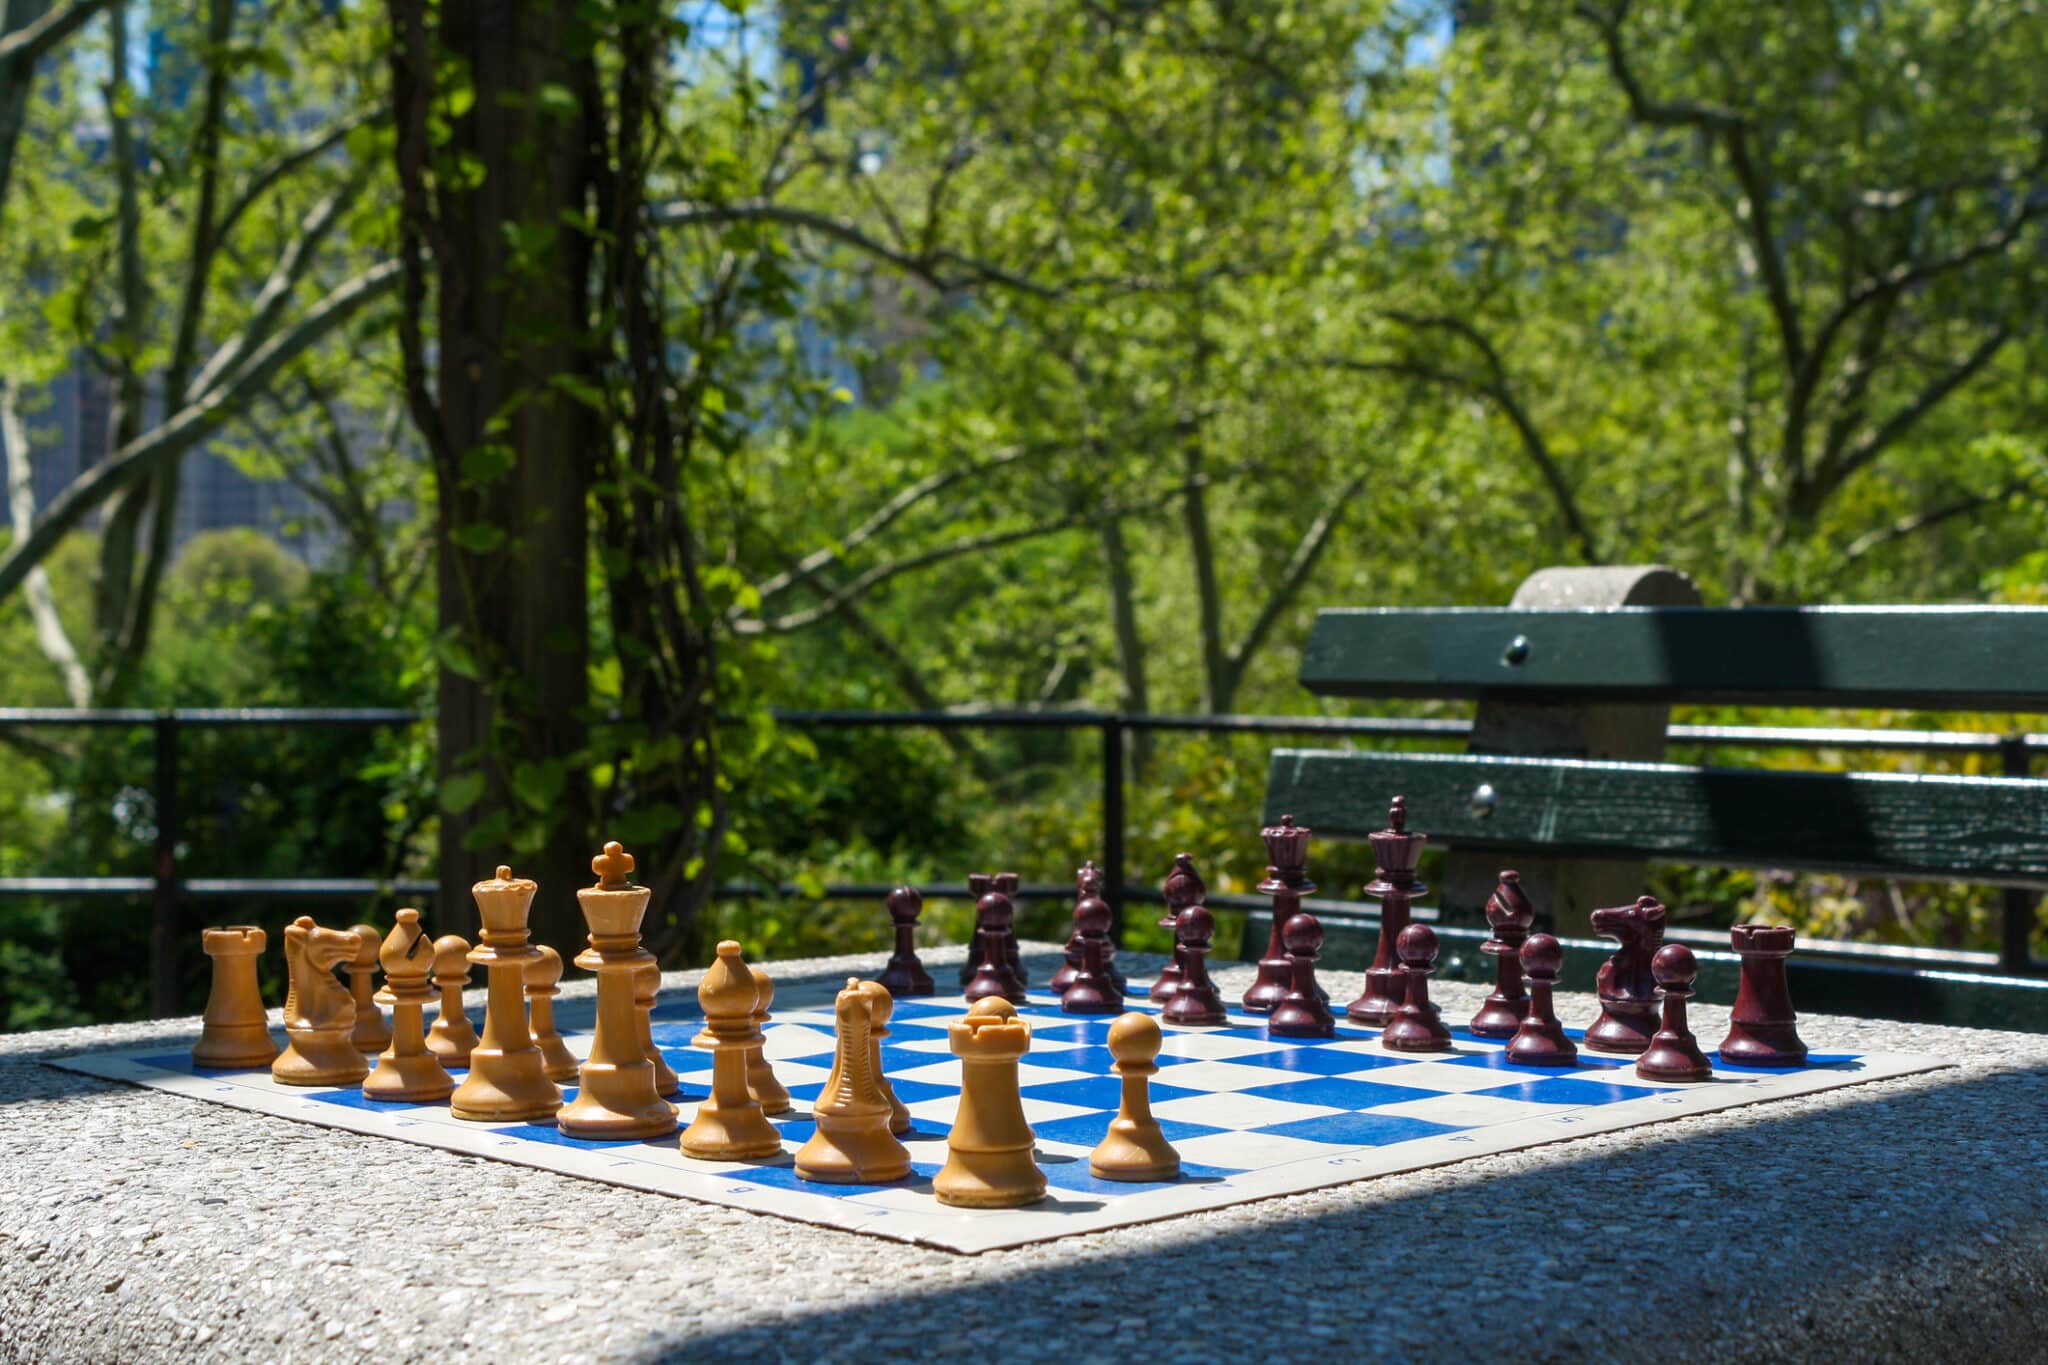 Chess set, Central Park, New York, NY